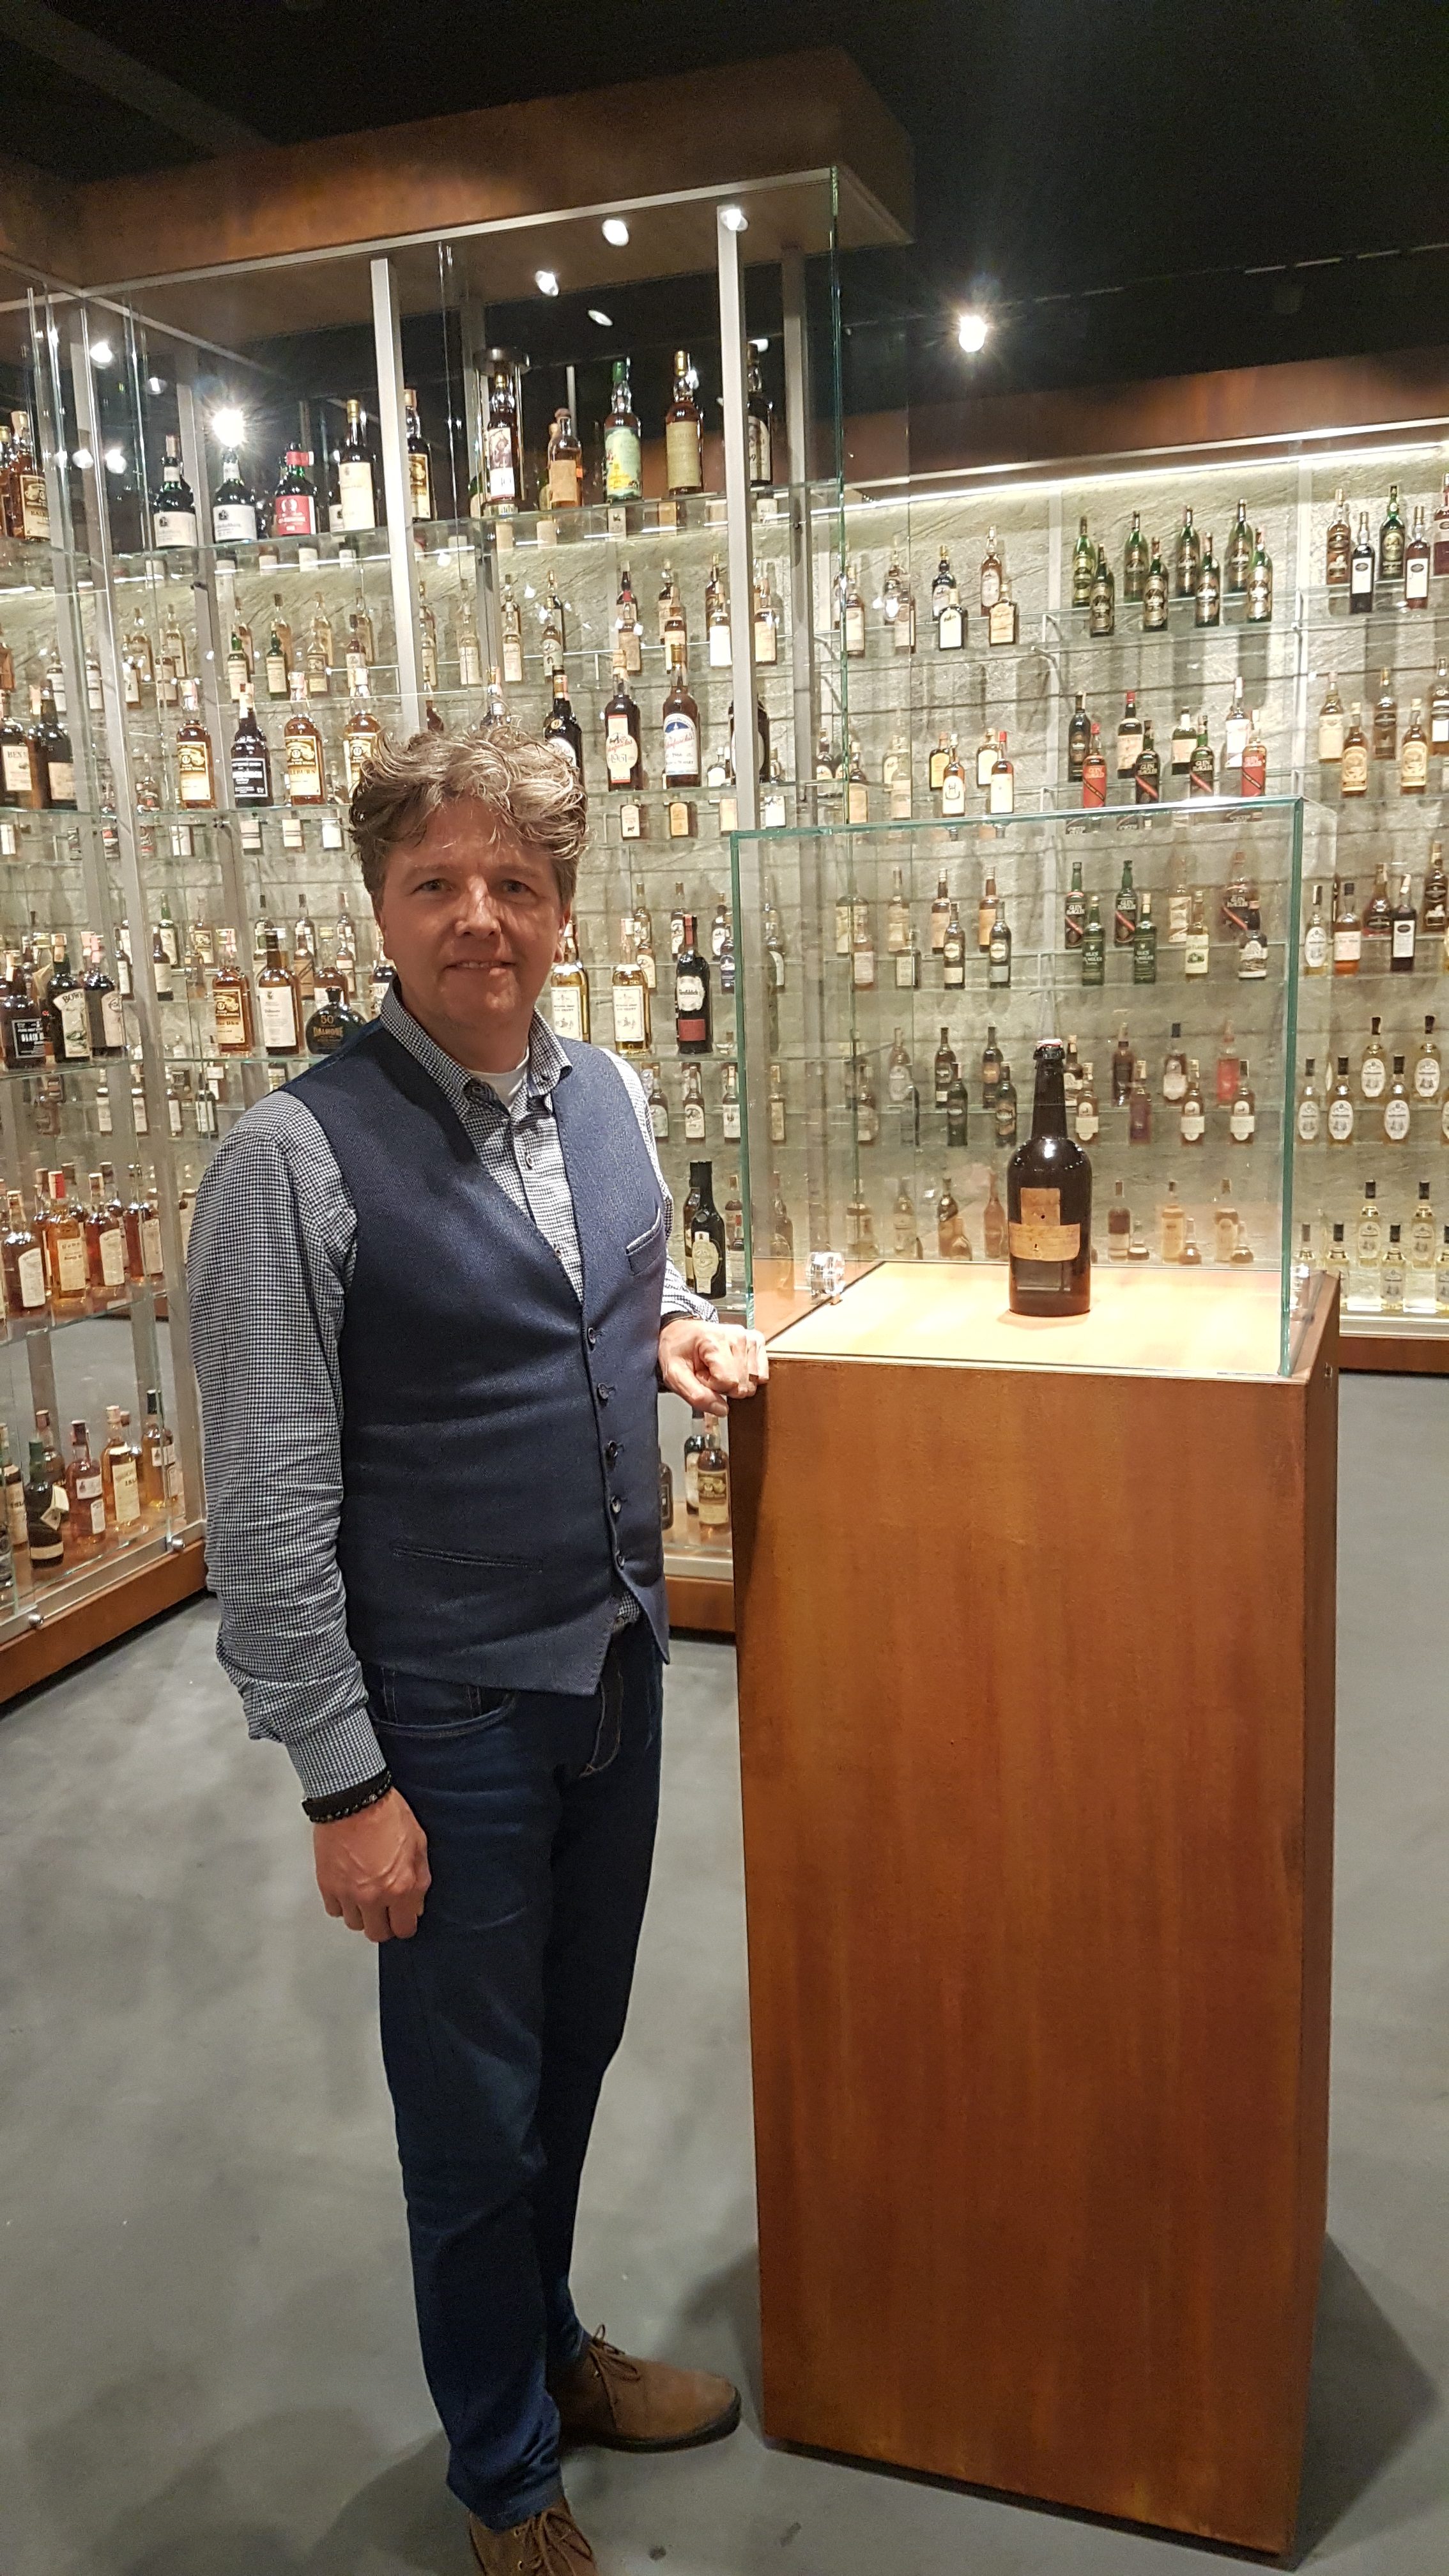 Paul-van-der-Hulst-commercieel-directeur-bij-SWI-toont-oudste-fles-in-Zagatti-Museum-Sassenheim Whisky